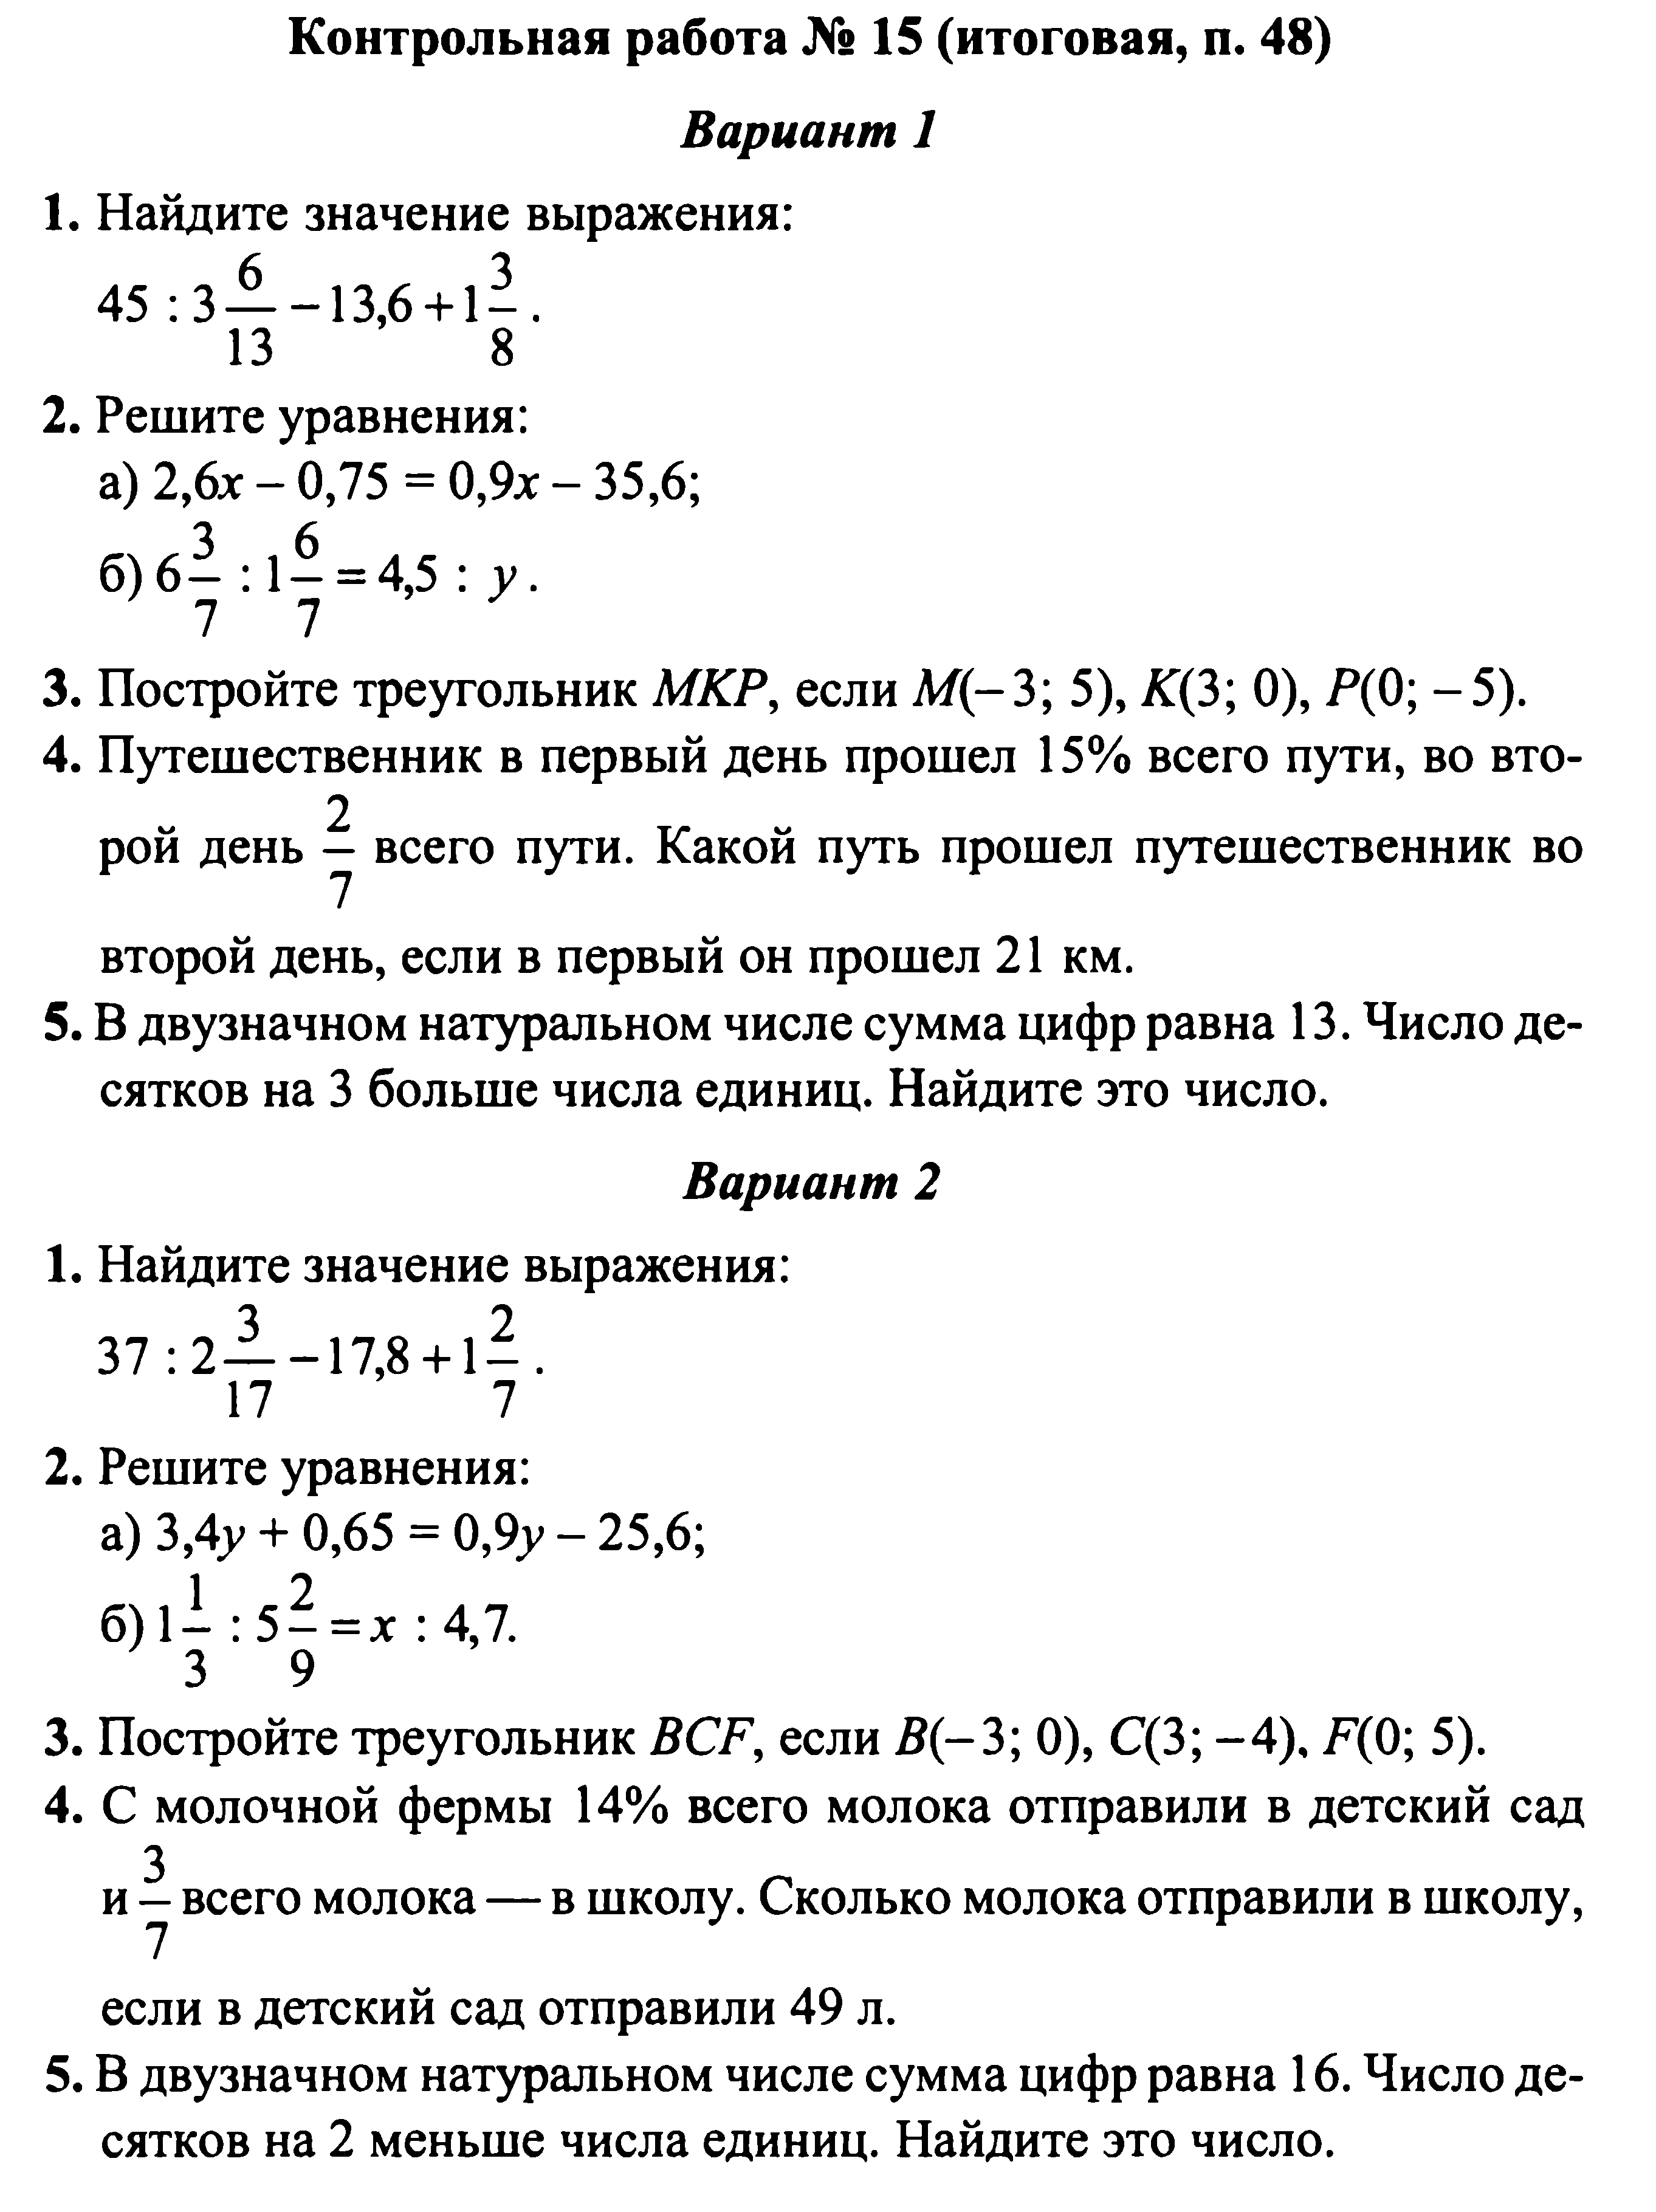 Решение уравнений 6 класс математика проверочная работа